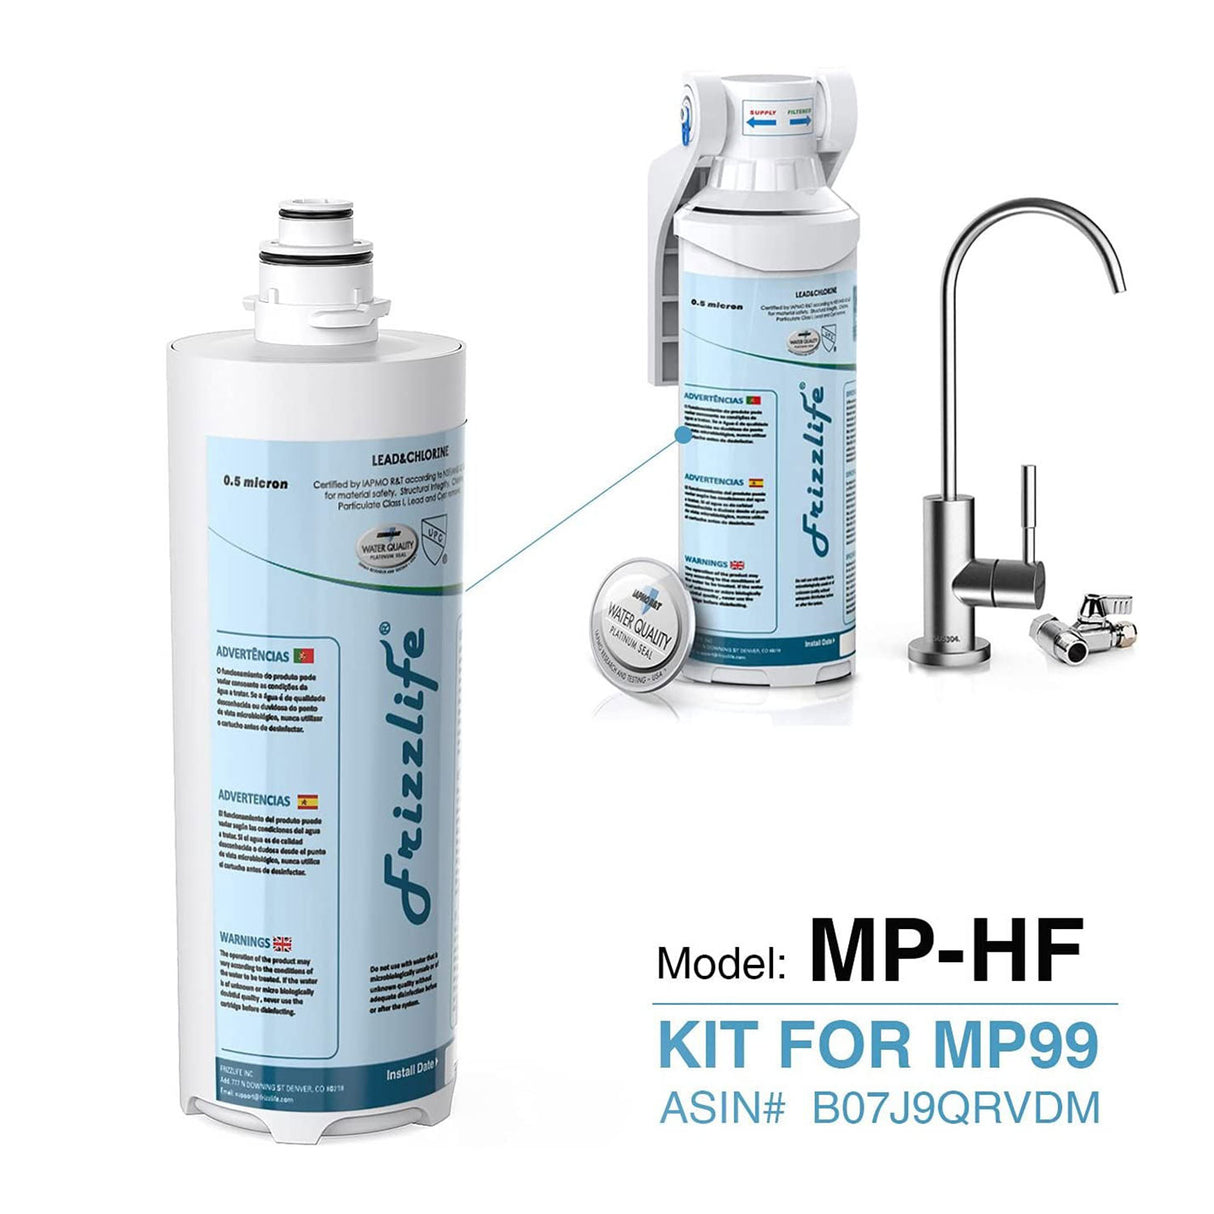 Kit de cartucho de filtro de repuesto Frizzlife MP-HF para MP99 - Incluye cartucho de filtro y carcasa de filtro